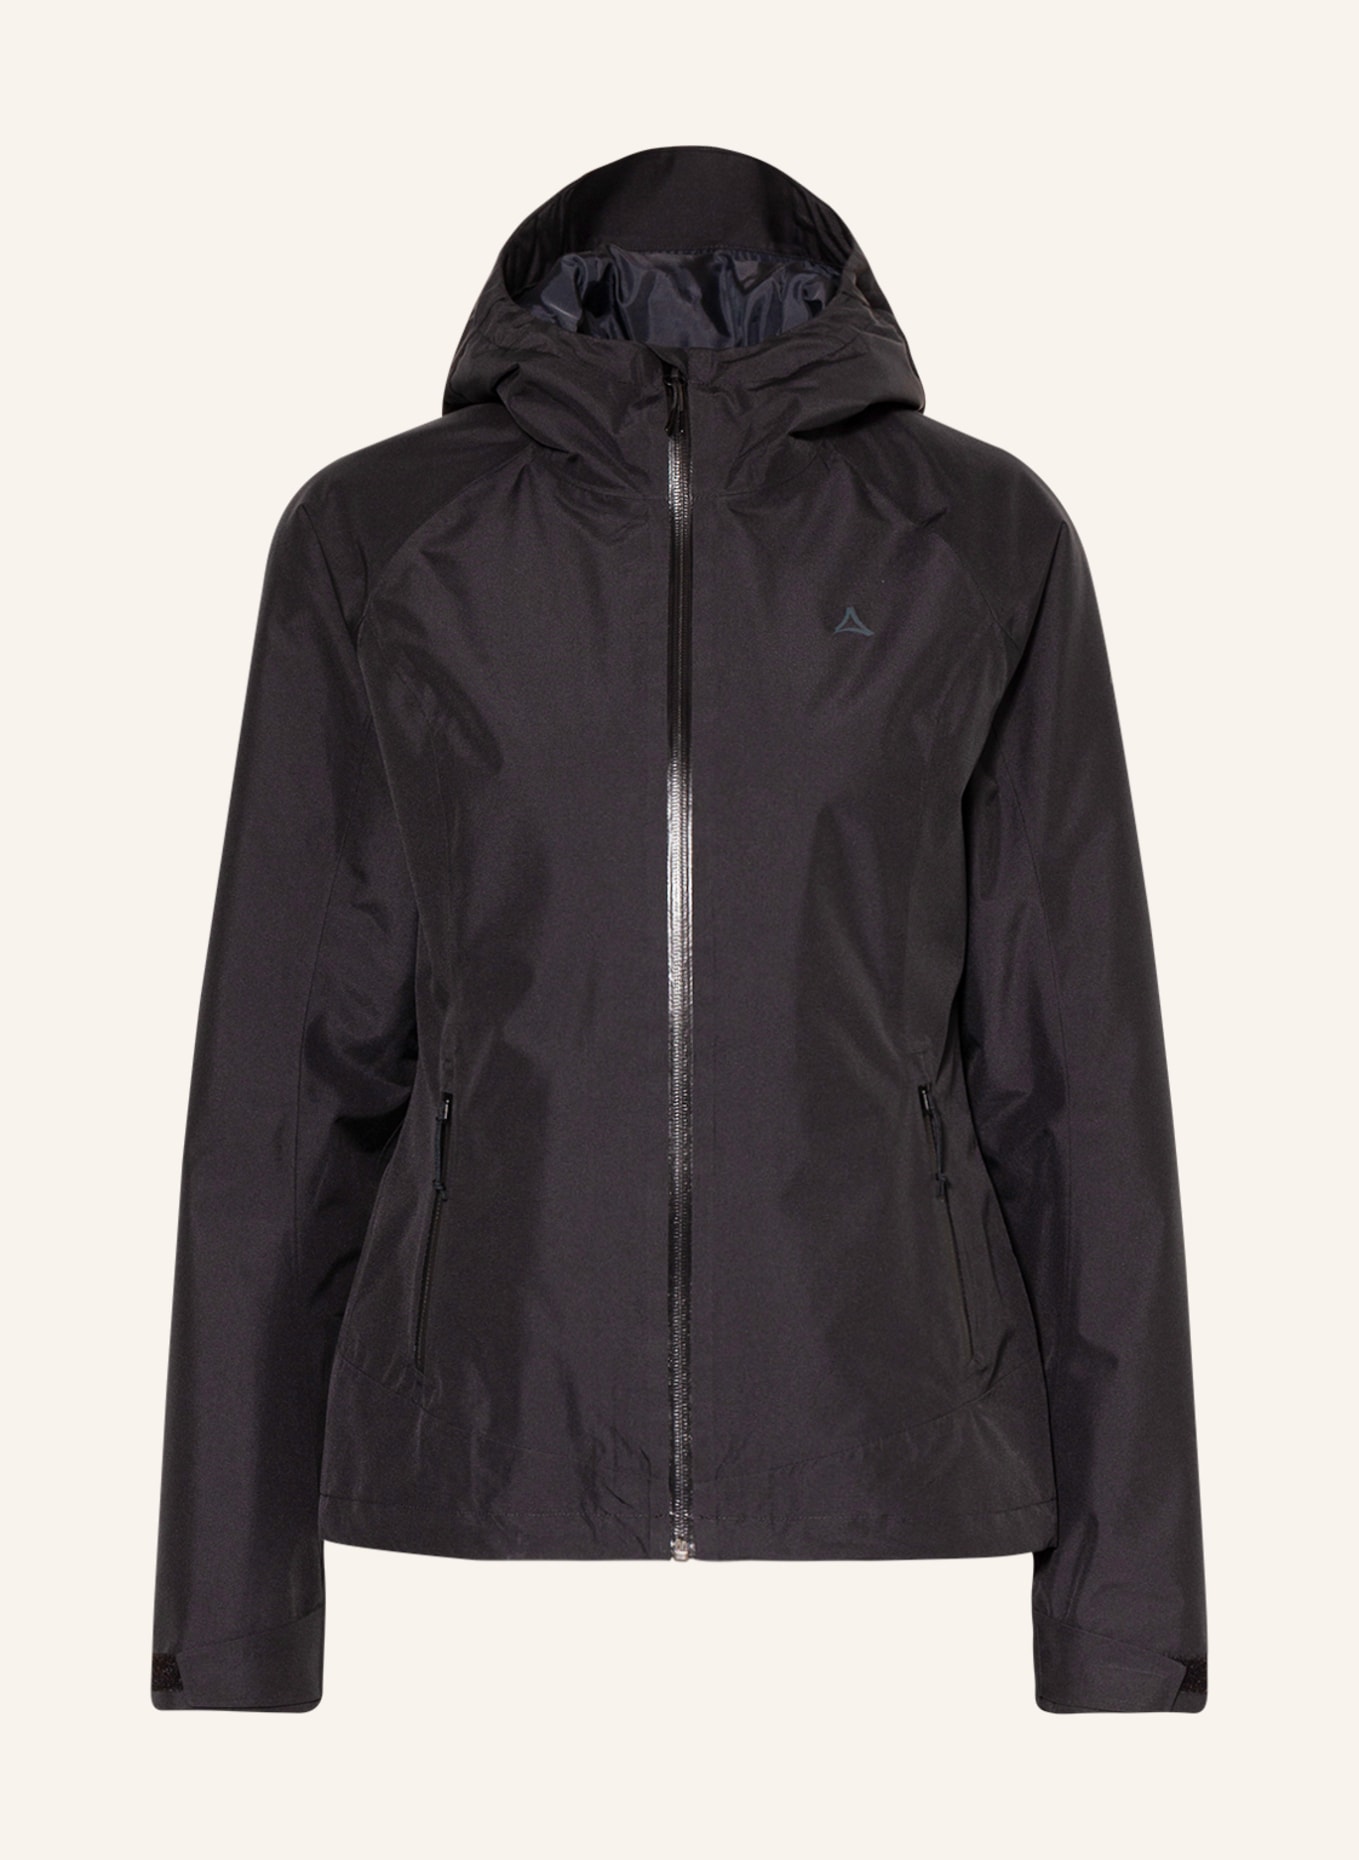 Schöffel Outdoor jacket WAMBERG in black